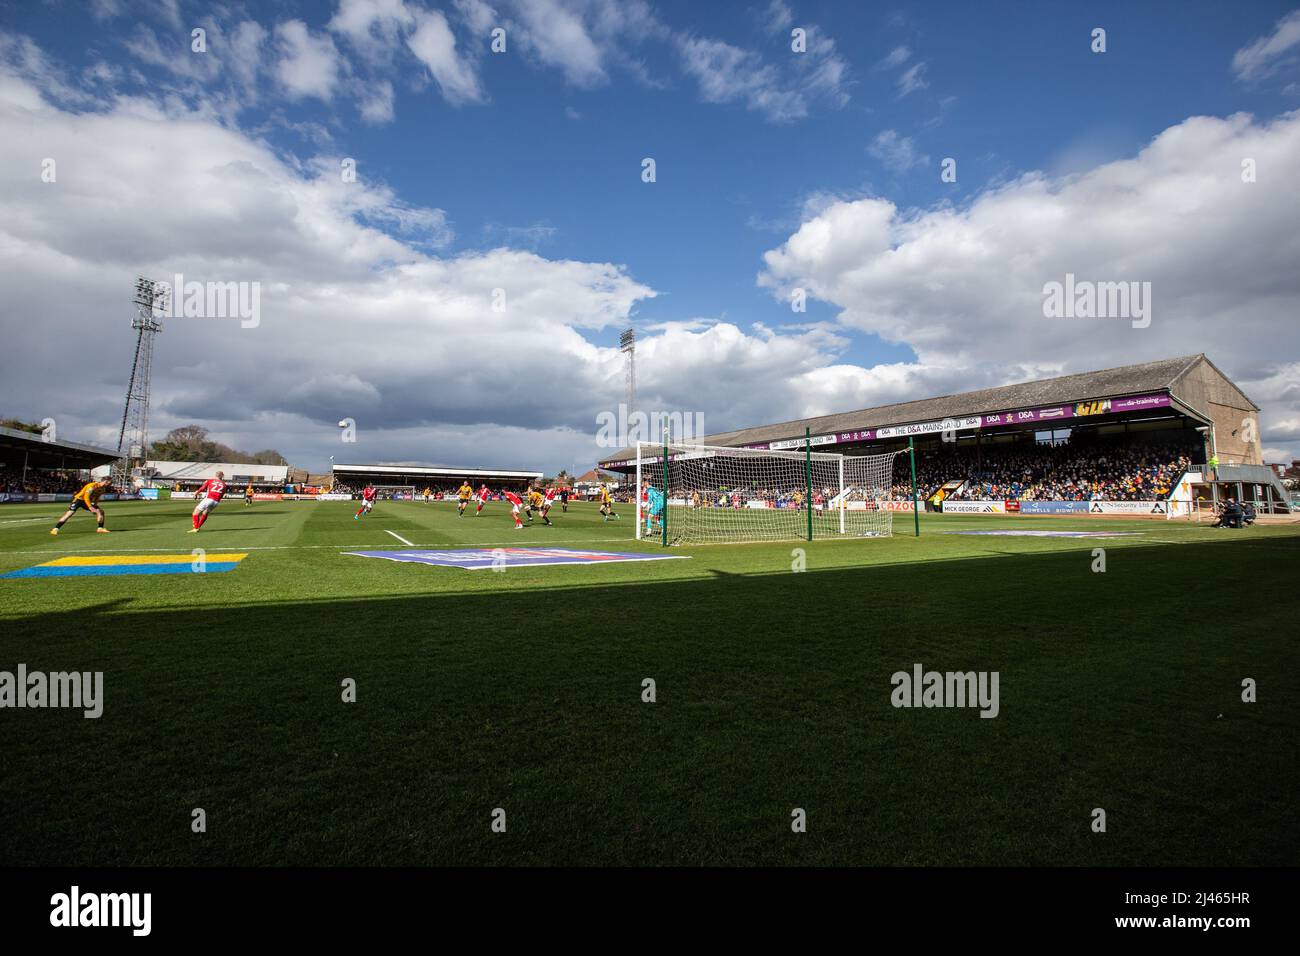 Gesamtansicht des Abbey Stadions, der Heimat des Cambridge United Football Club, während des Spiels an sonnigen Tagen Stockfoto